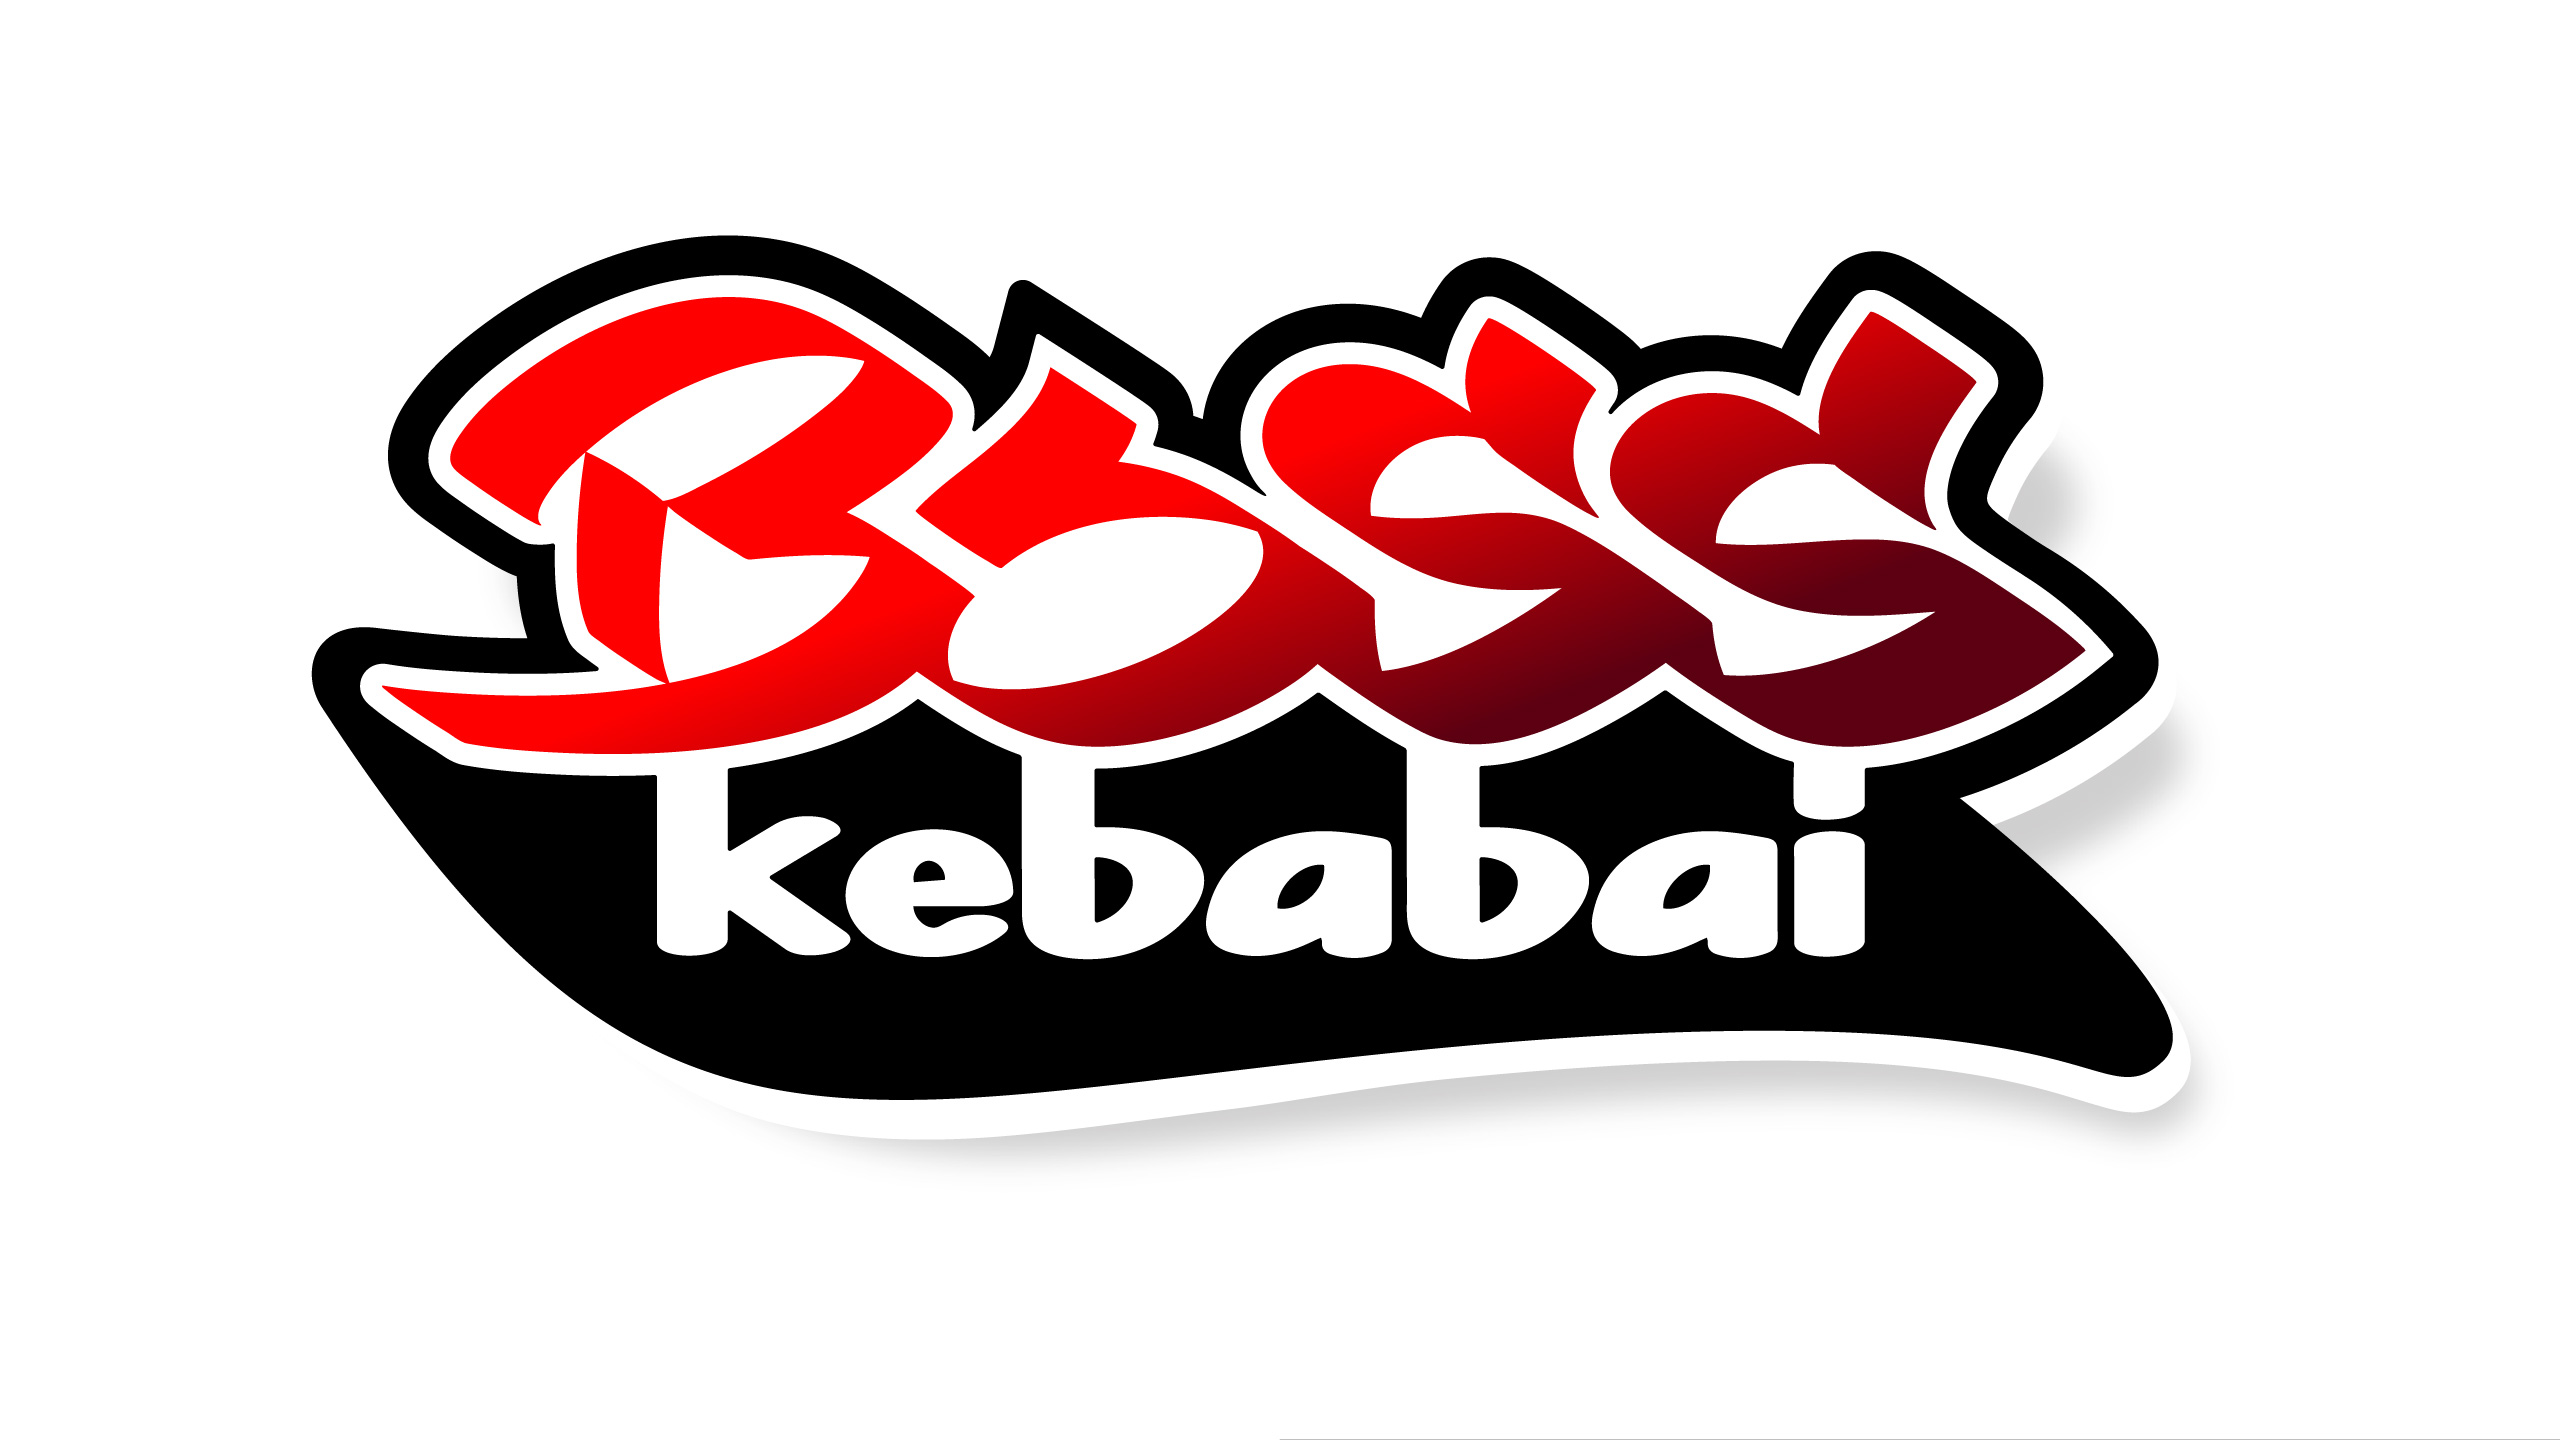 BOSS kebabai 2 branding - Logobou Desing